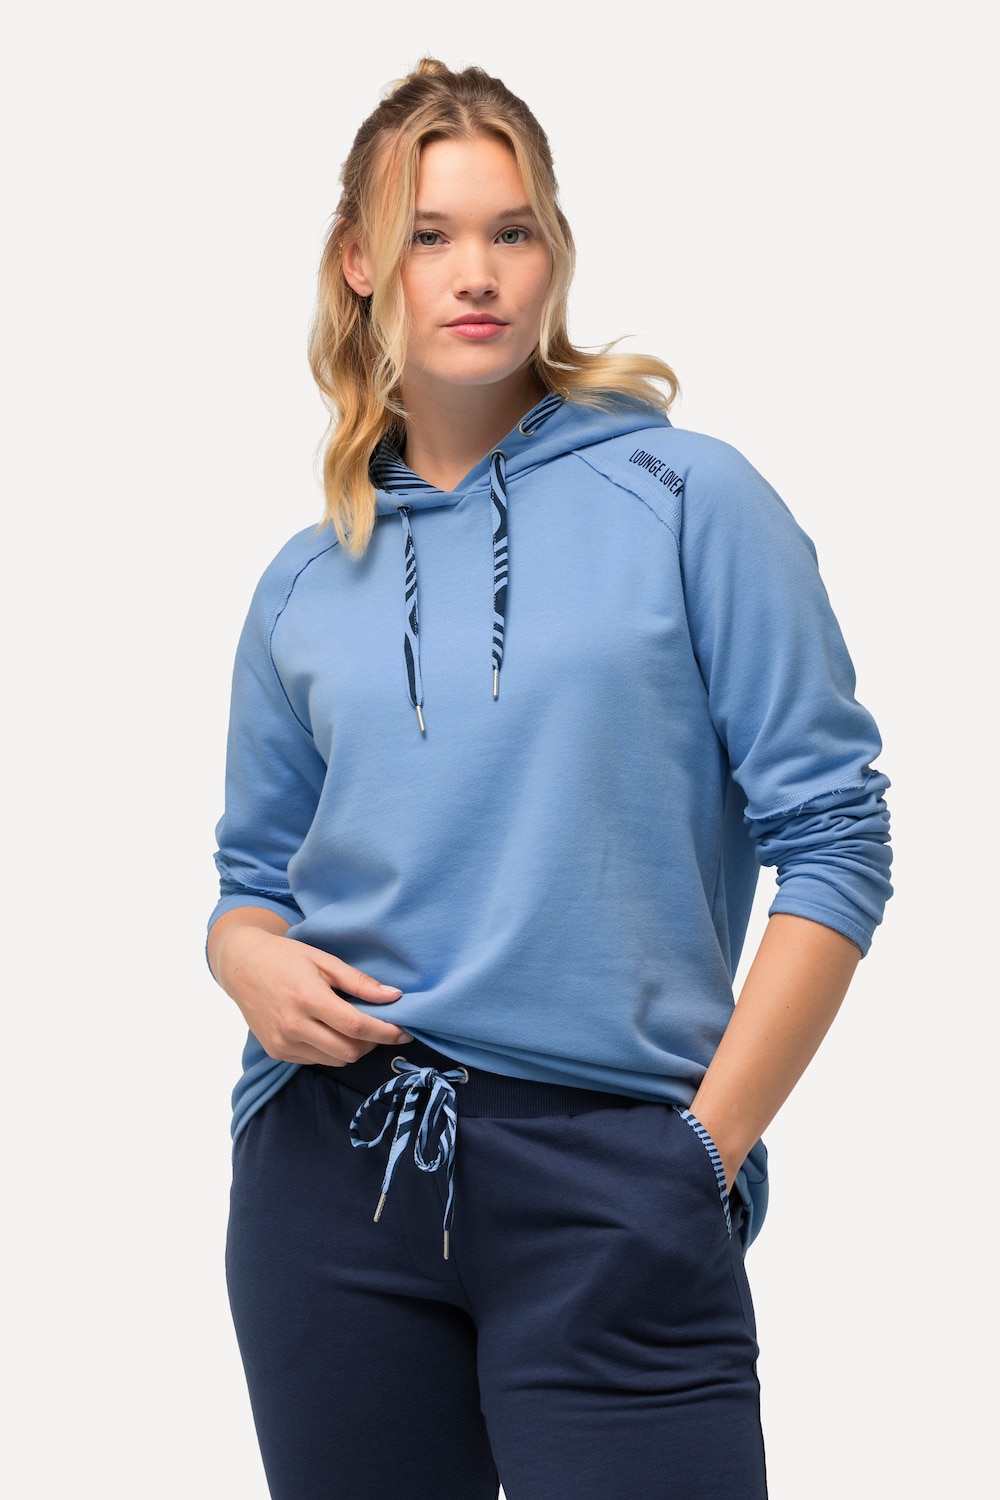 Grote Maten Loungewear-hoodie, Dames, blauw, Maat: 54/56, Katoen/Polyester, Ulla Popken